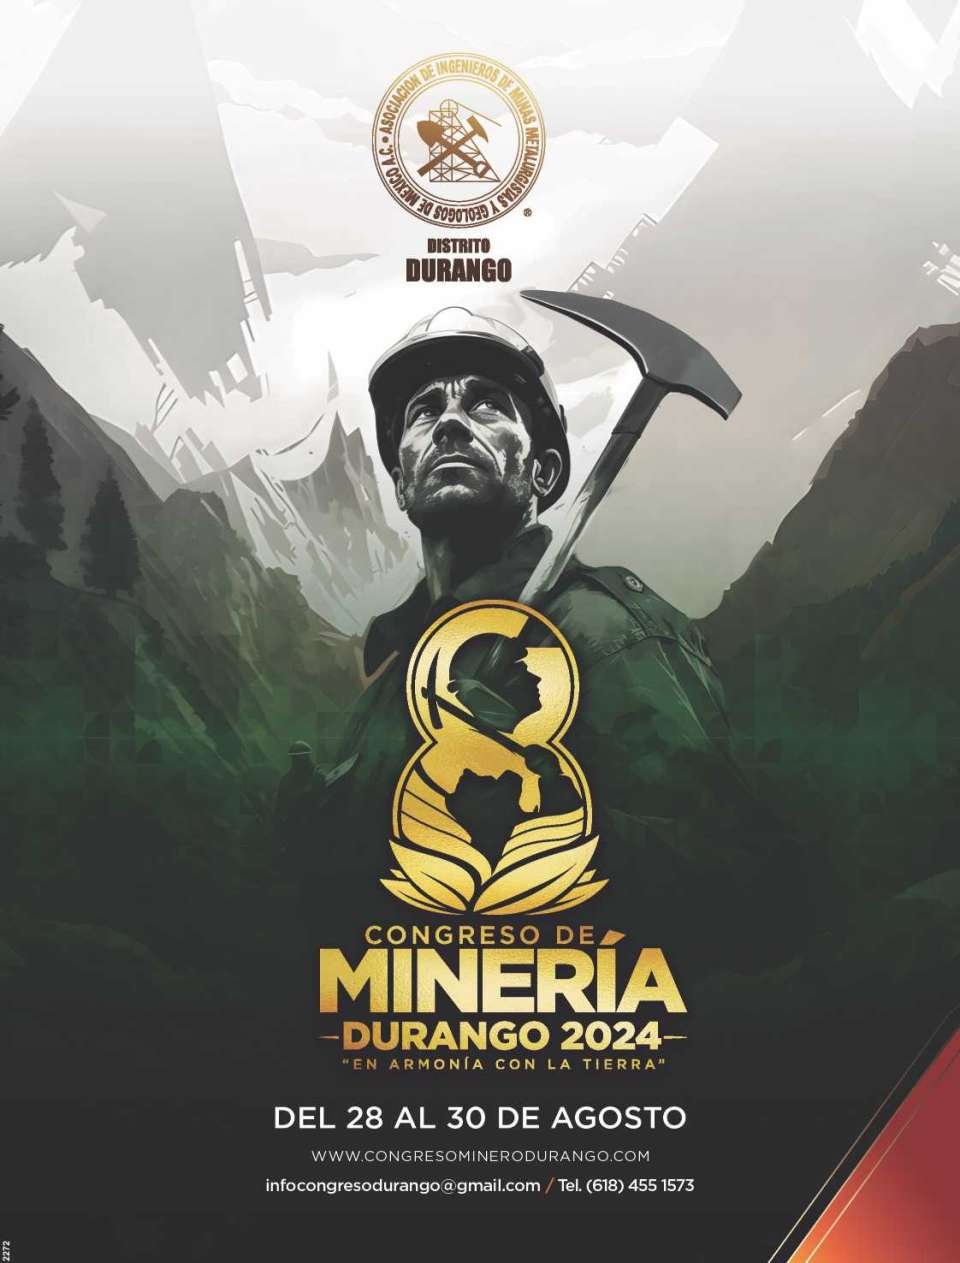 Exposicion y Congreso de Mineria, del 28 al 30 de Agosto 2024 en la ciudad de Durango, Mexico.